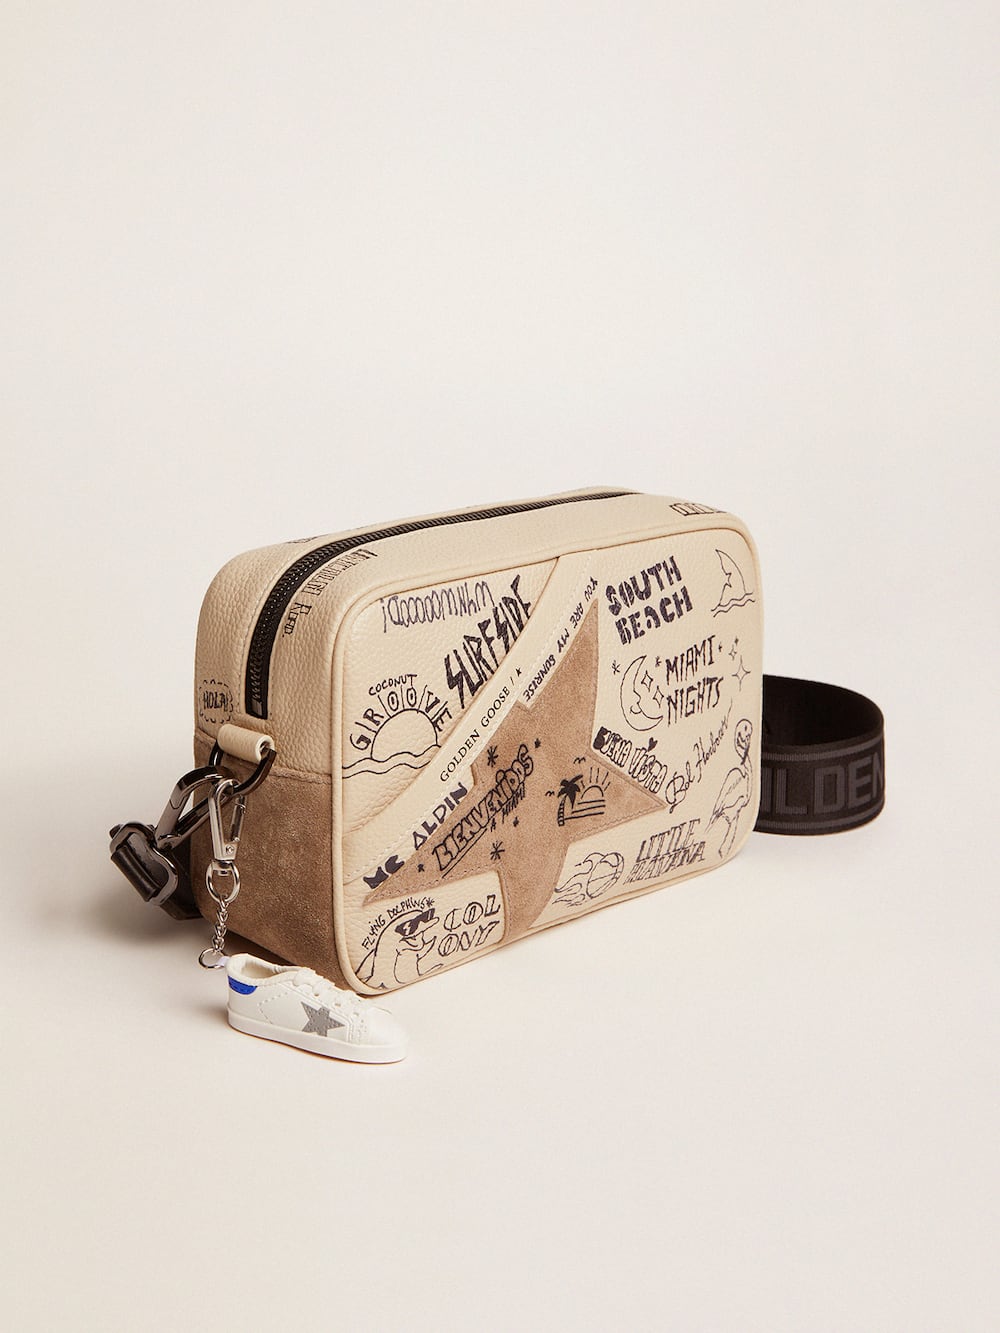 Golden Goose - Borsa Star Bag in pelle color bianco sporco con scritte nere a contrasto e stella in suede tortora in 